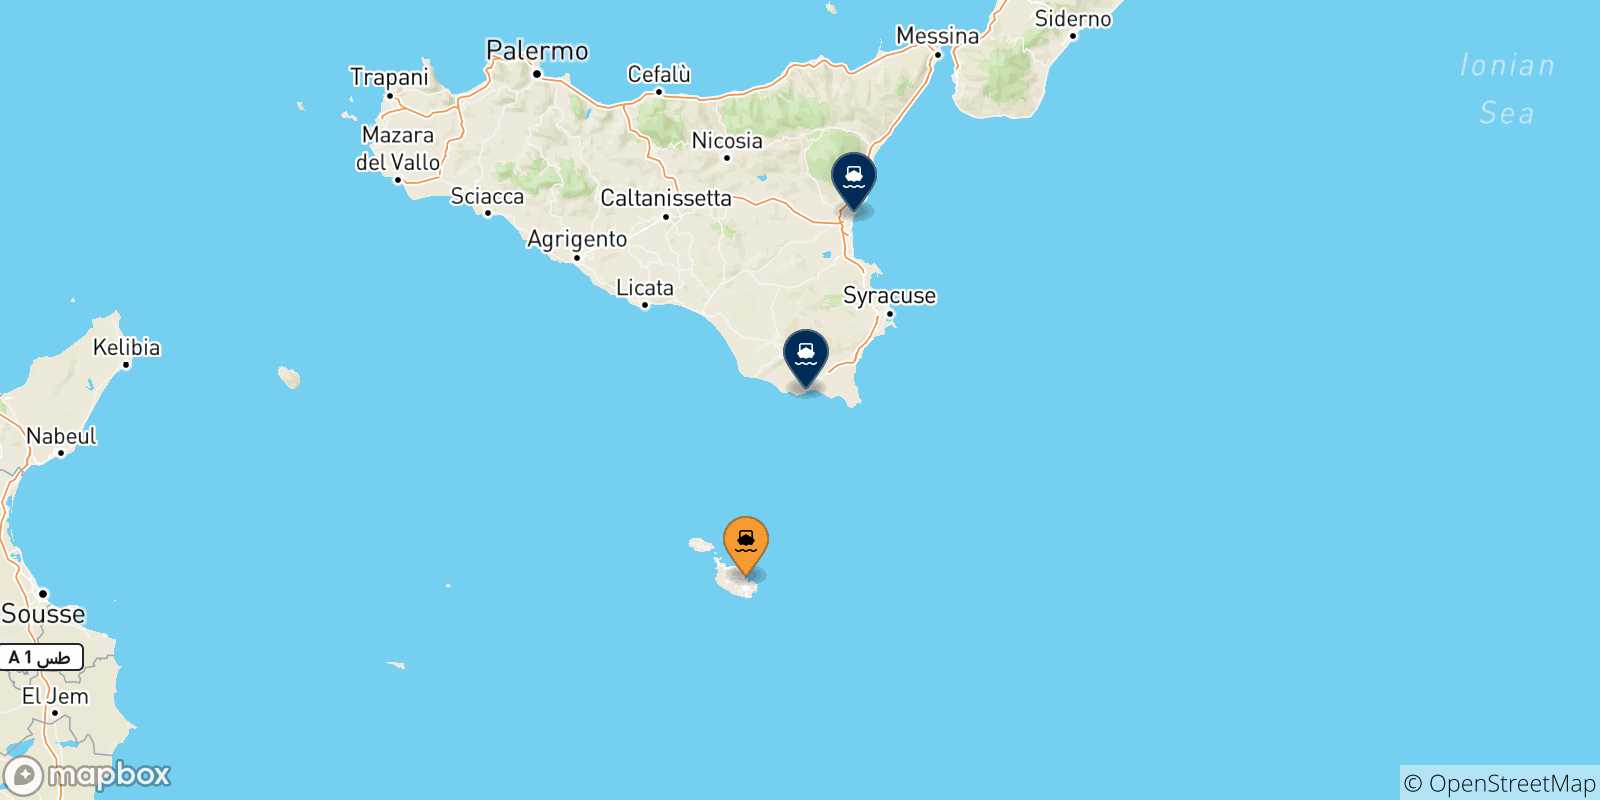 Mappa delle possibili rotte tra Malta e la Sicilia